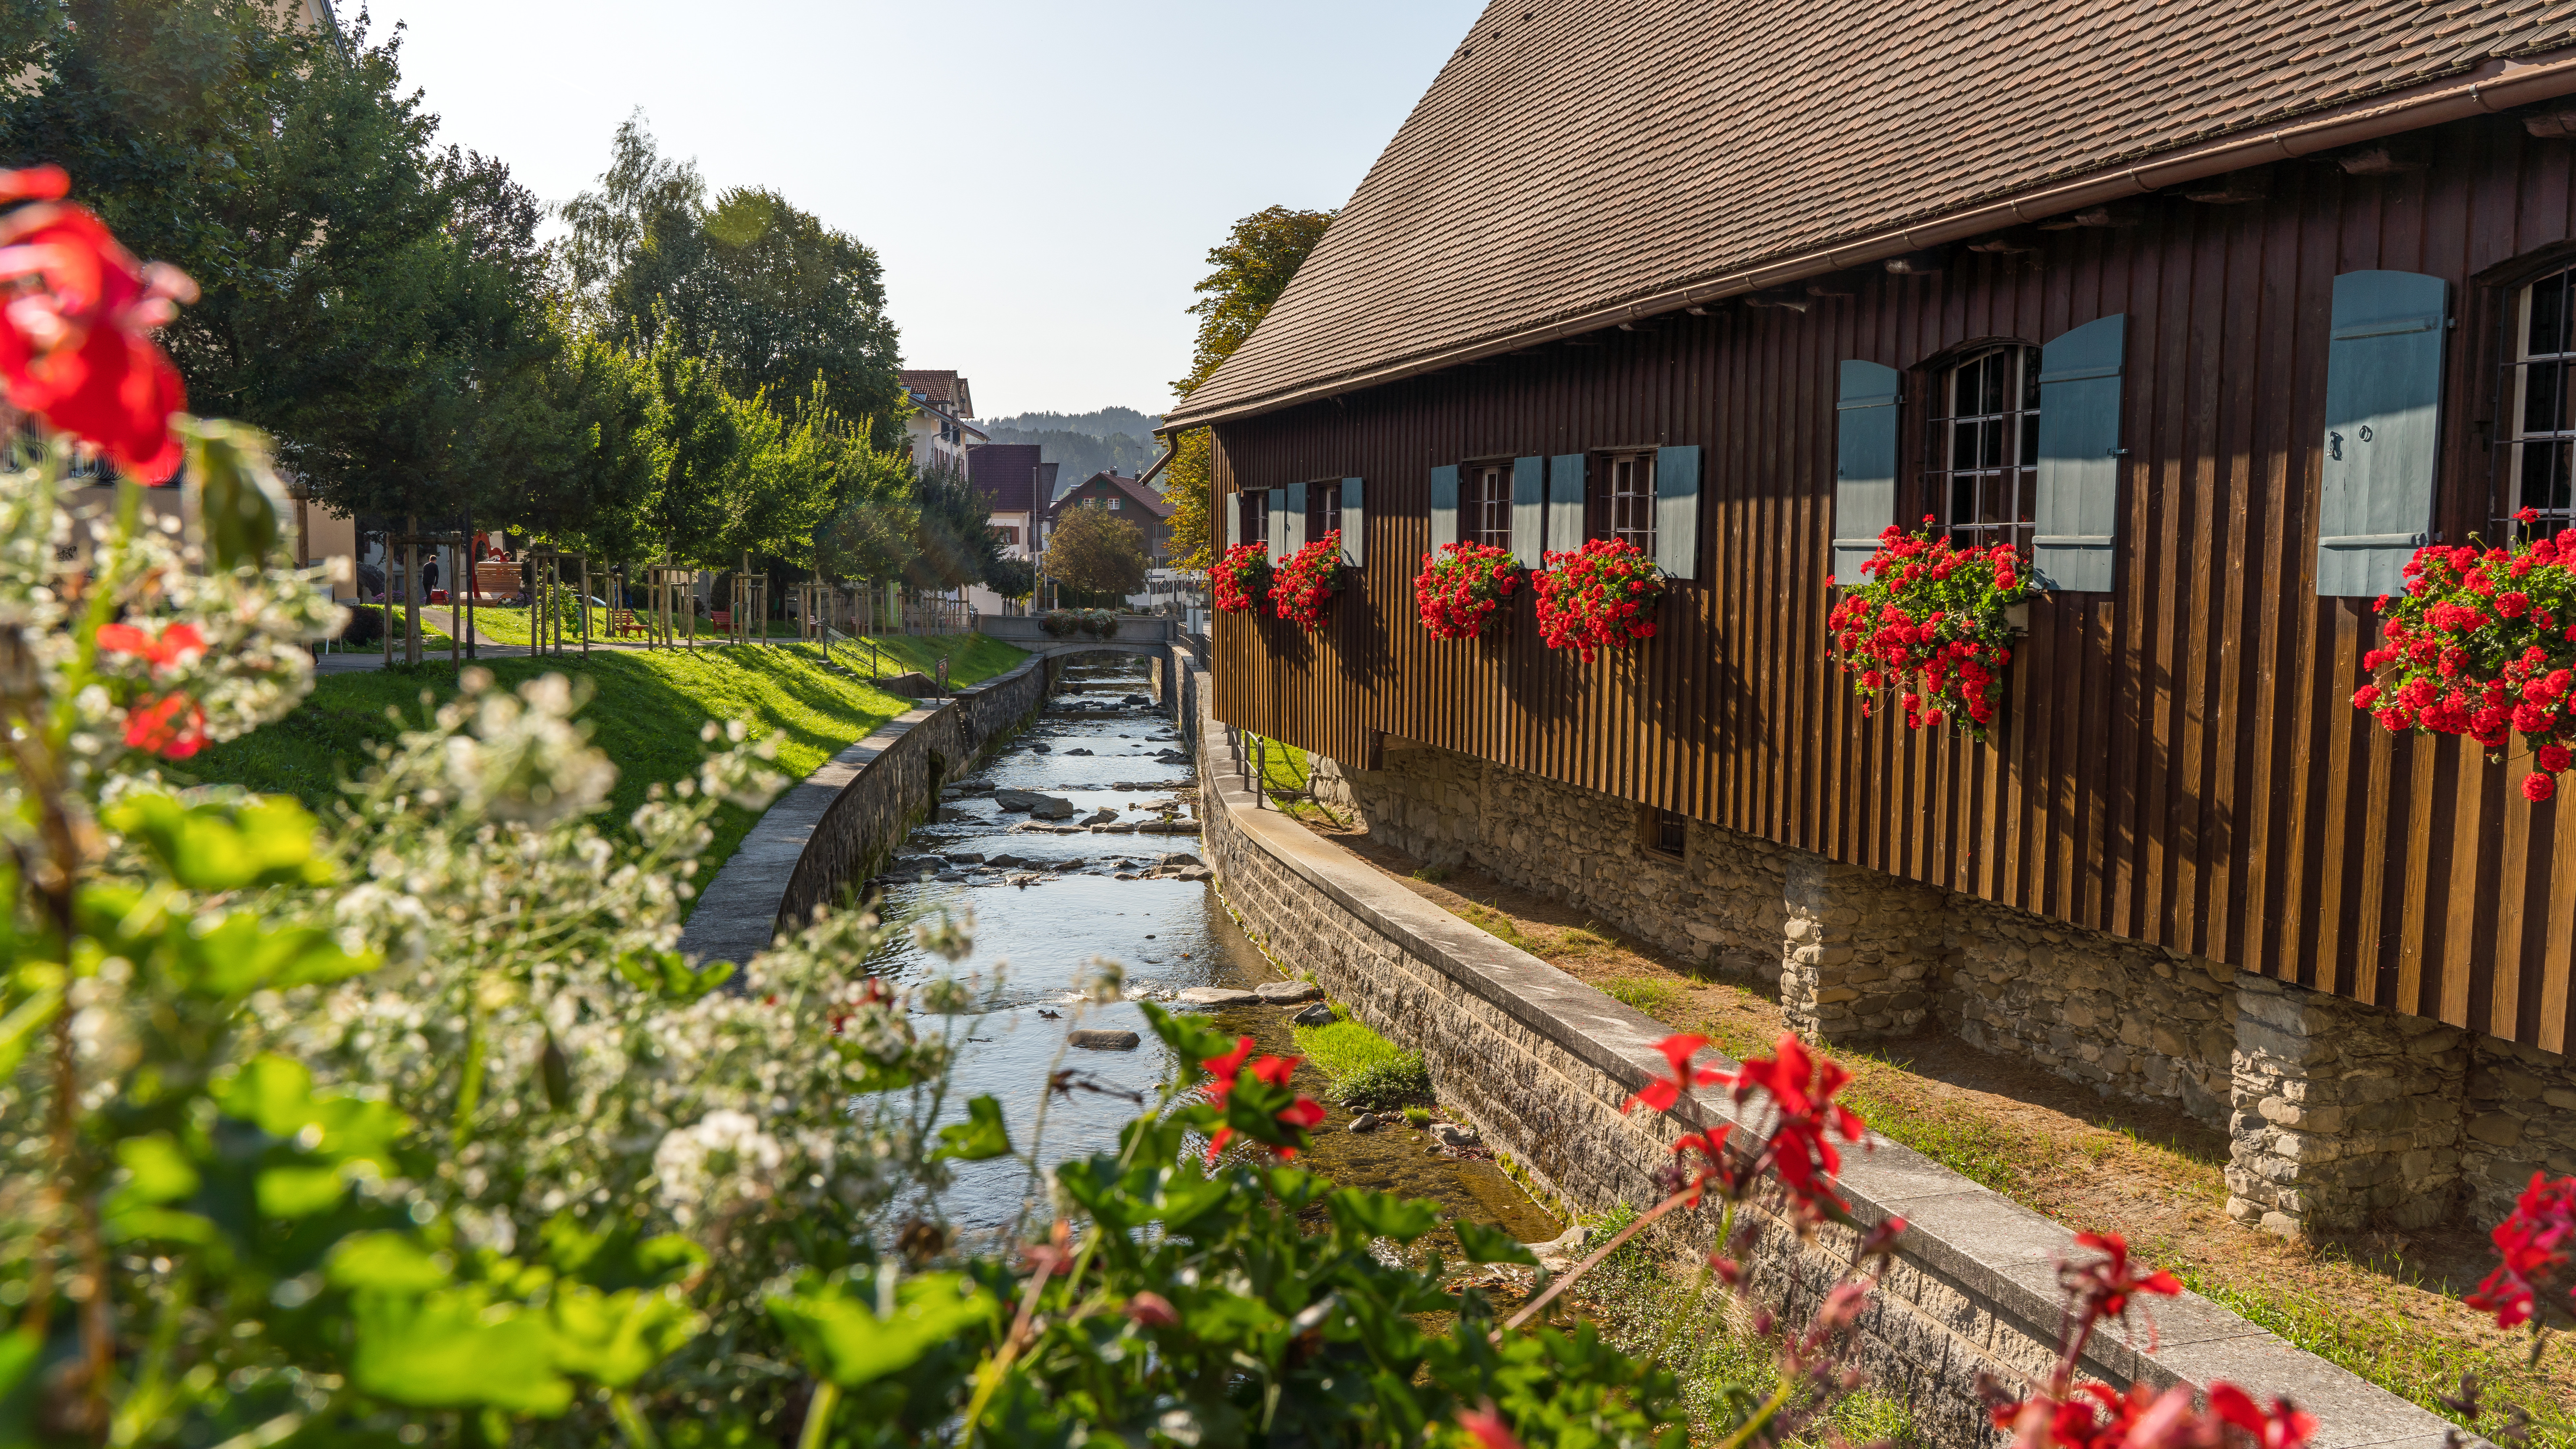  Kornhaus am Hausbach mit roten Blumen beschmückt - das Bild wird mit Klick vergrößert 